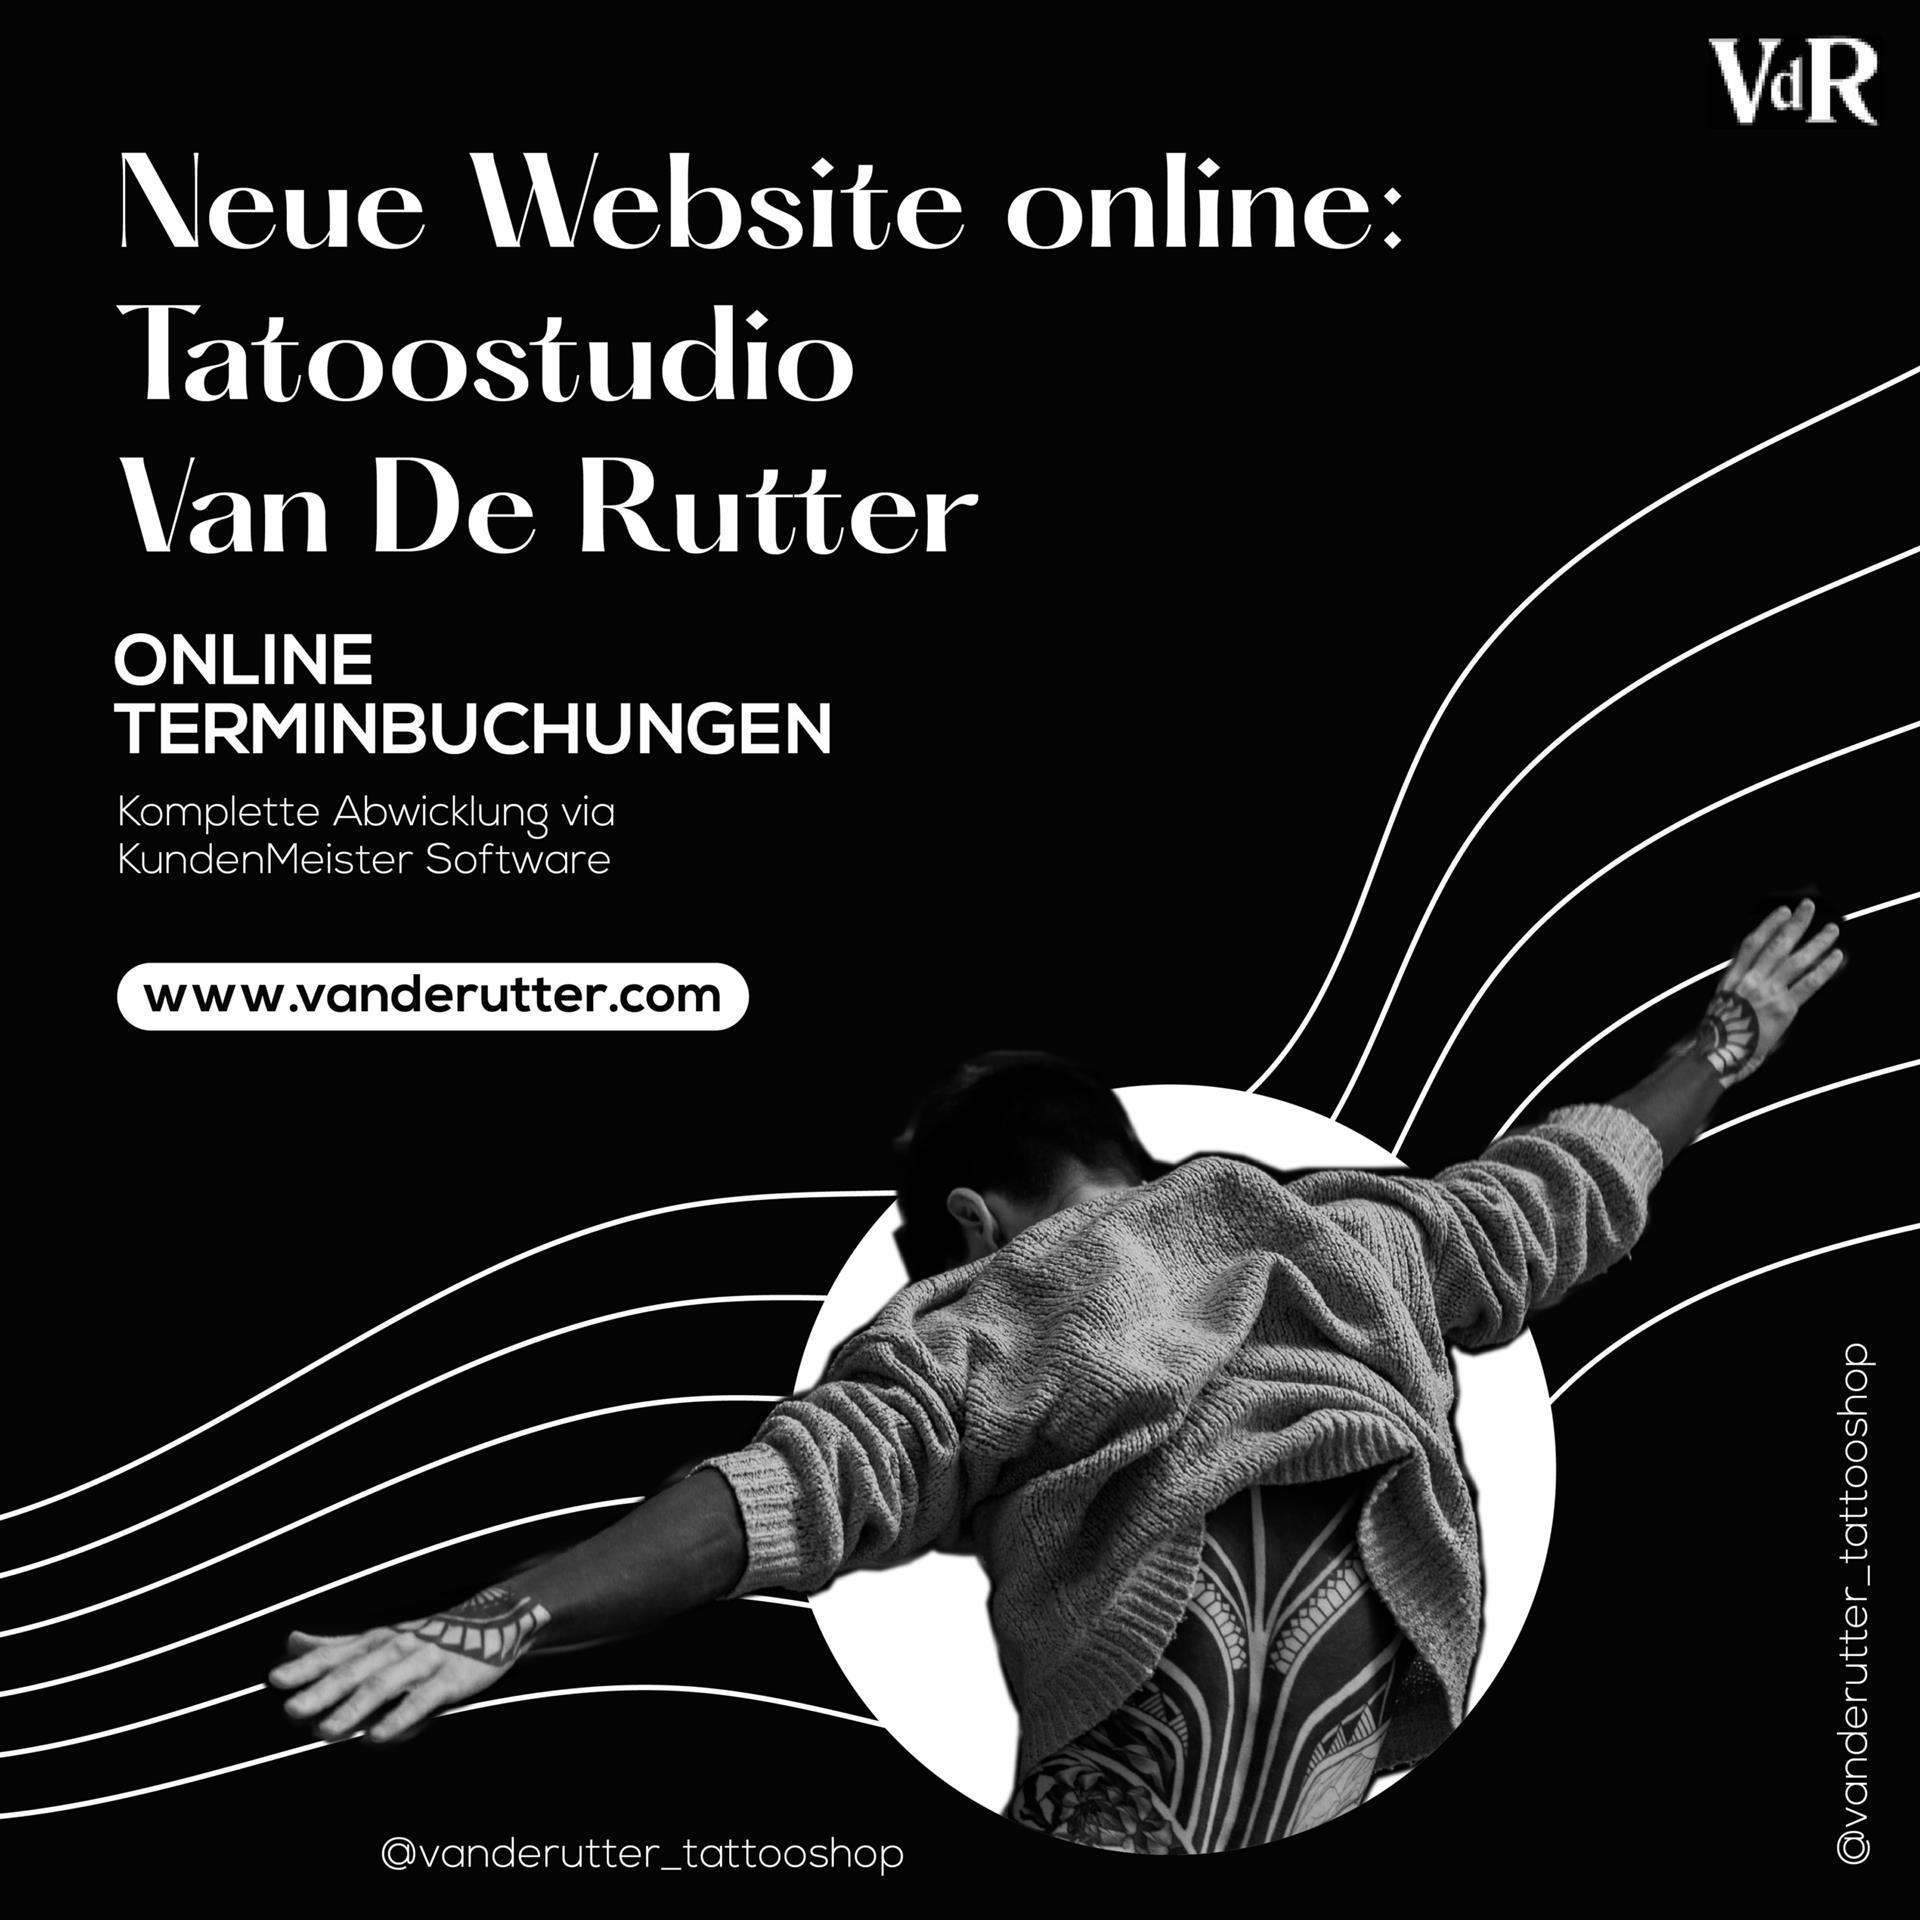 Новий веб-сайт для Ван де Руттера